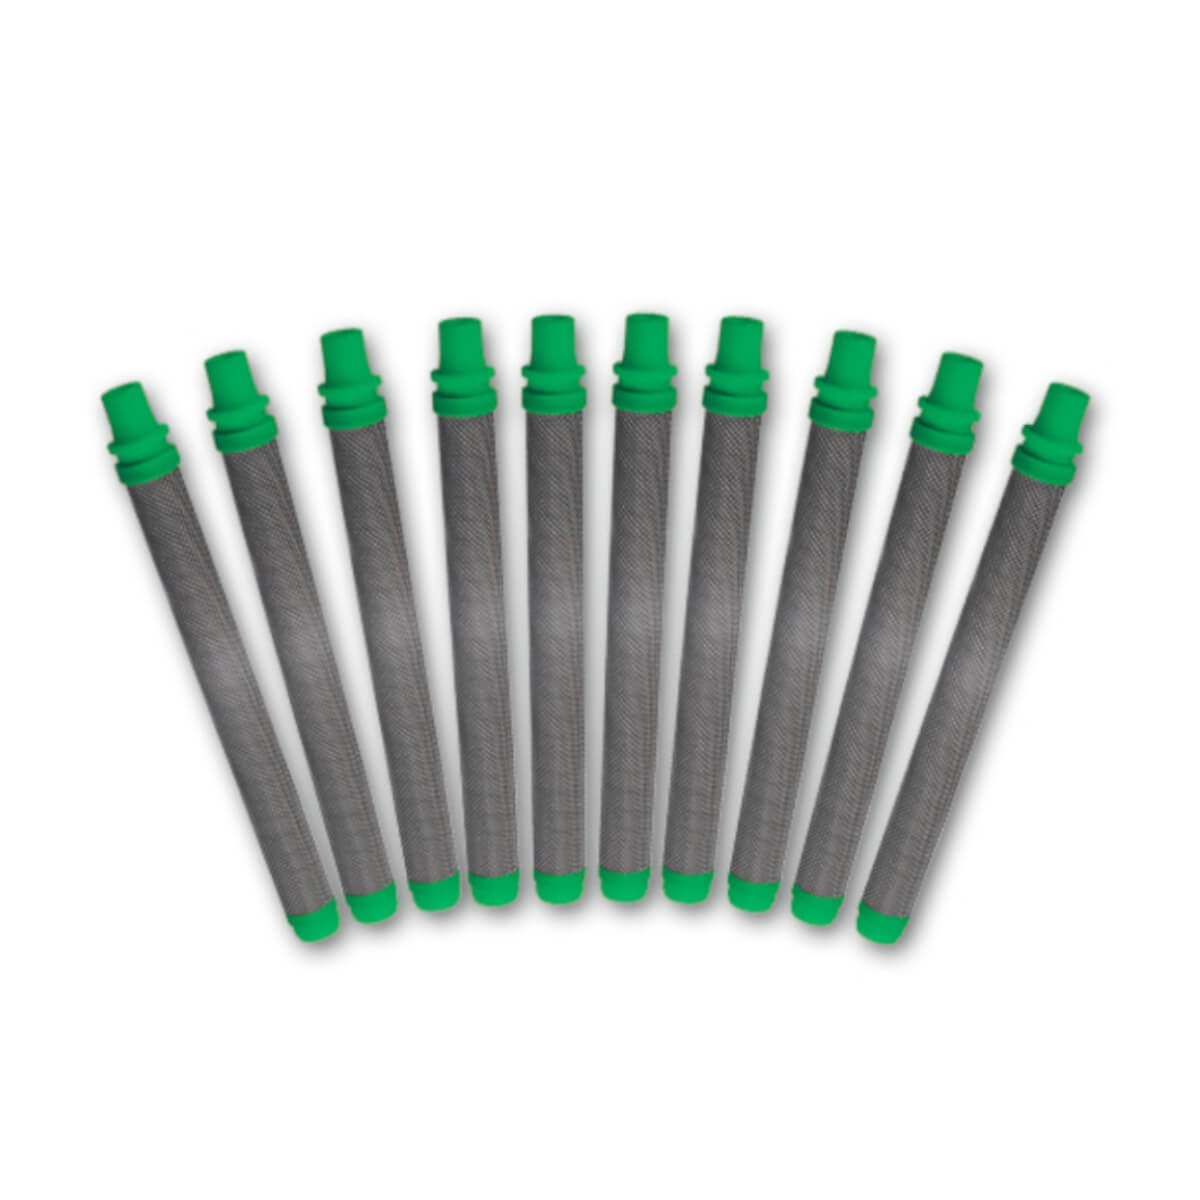 WAGNER Pistolenfilter grün, grob (10 Stück) | 30 Maschen für hochviskoses Material